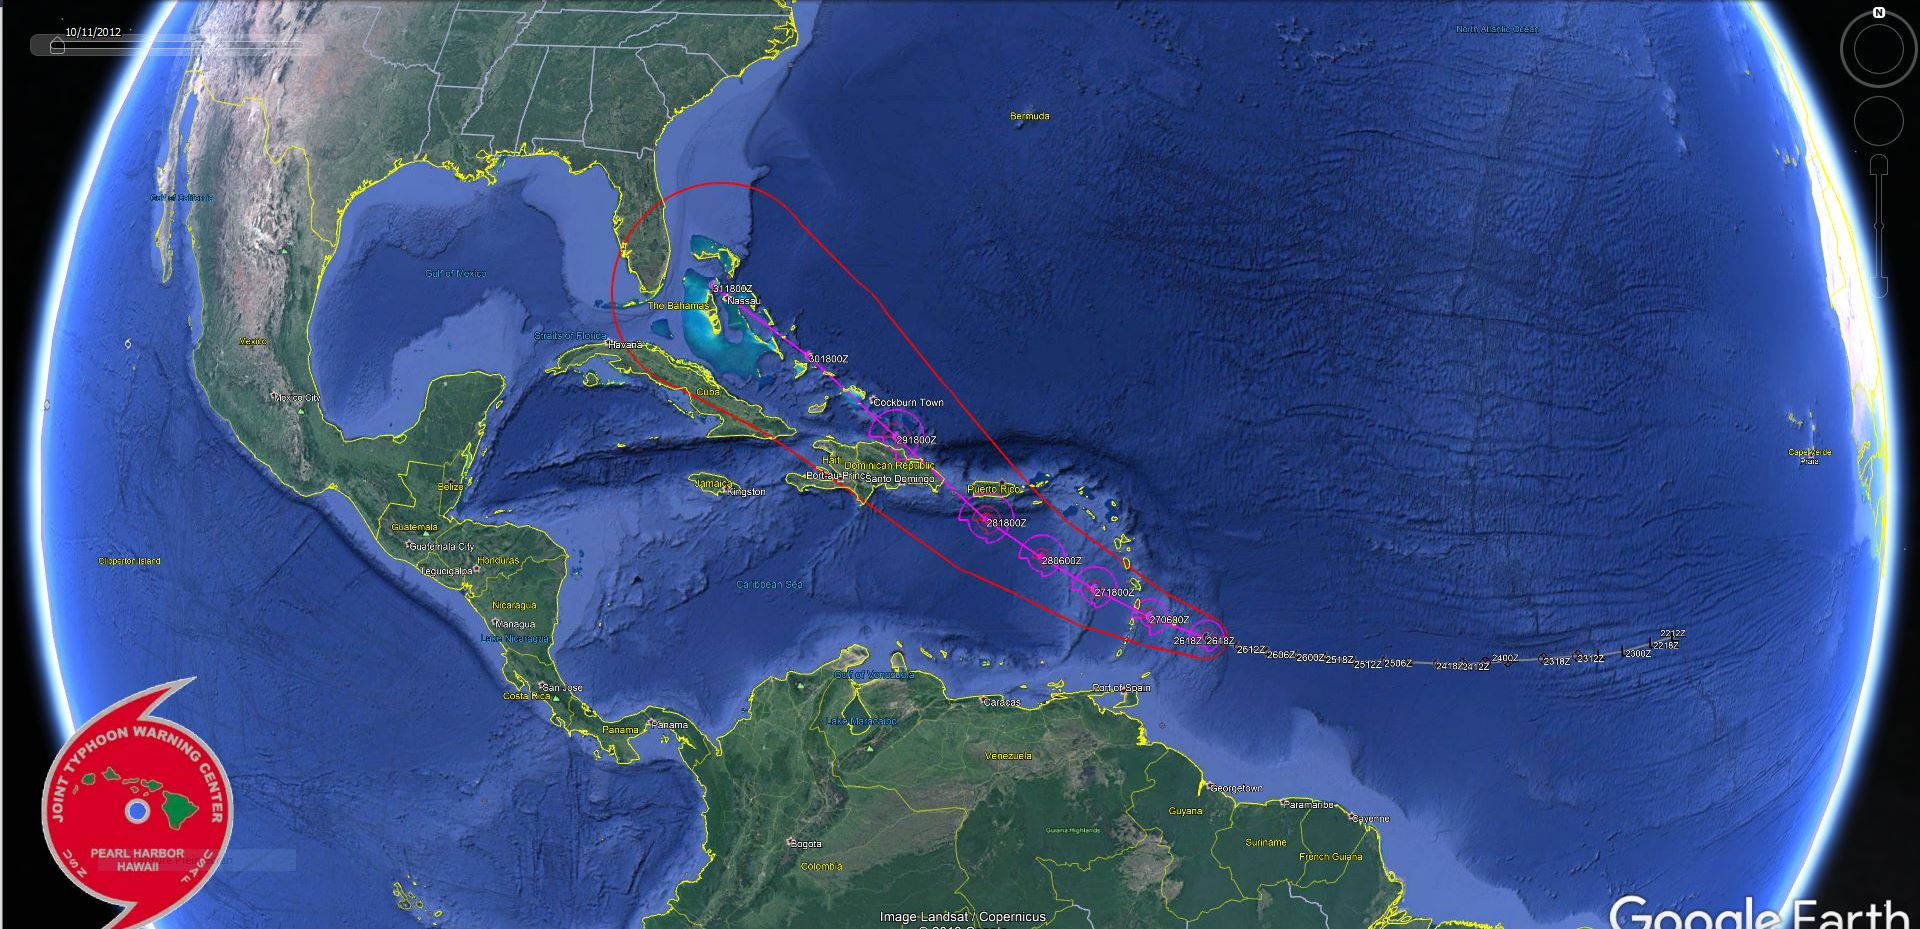 Plan plus large sur la trajectoire prévue. Après Puerto Rico et la République Dominicaine les Bahamas sont sur la trajectoire.